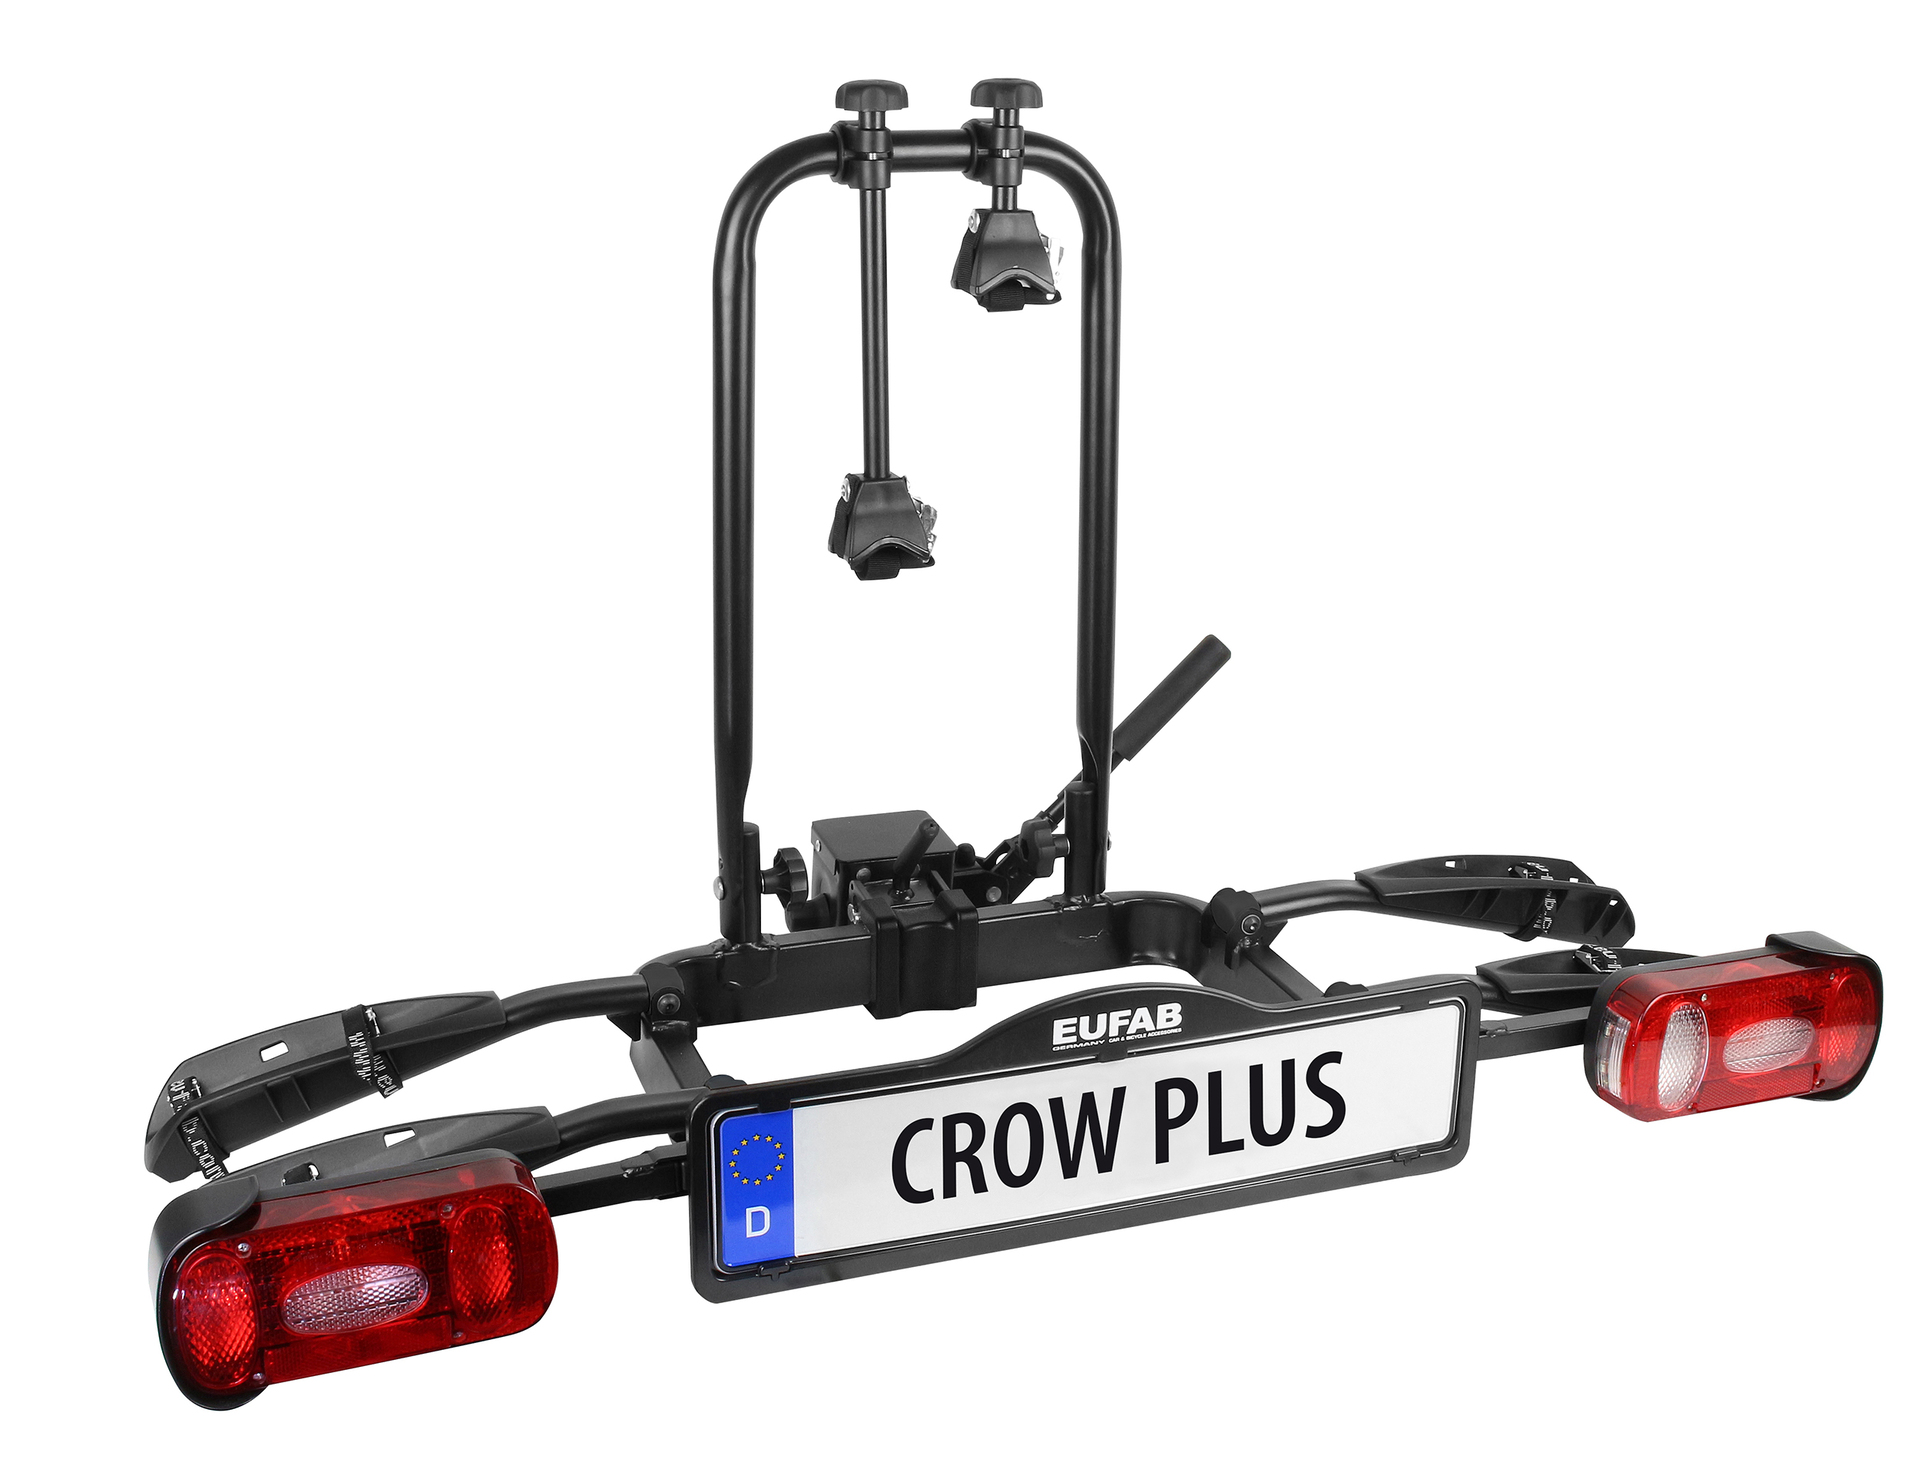 Fahrradträger CROW PLUS, erweiterbar